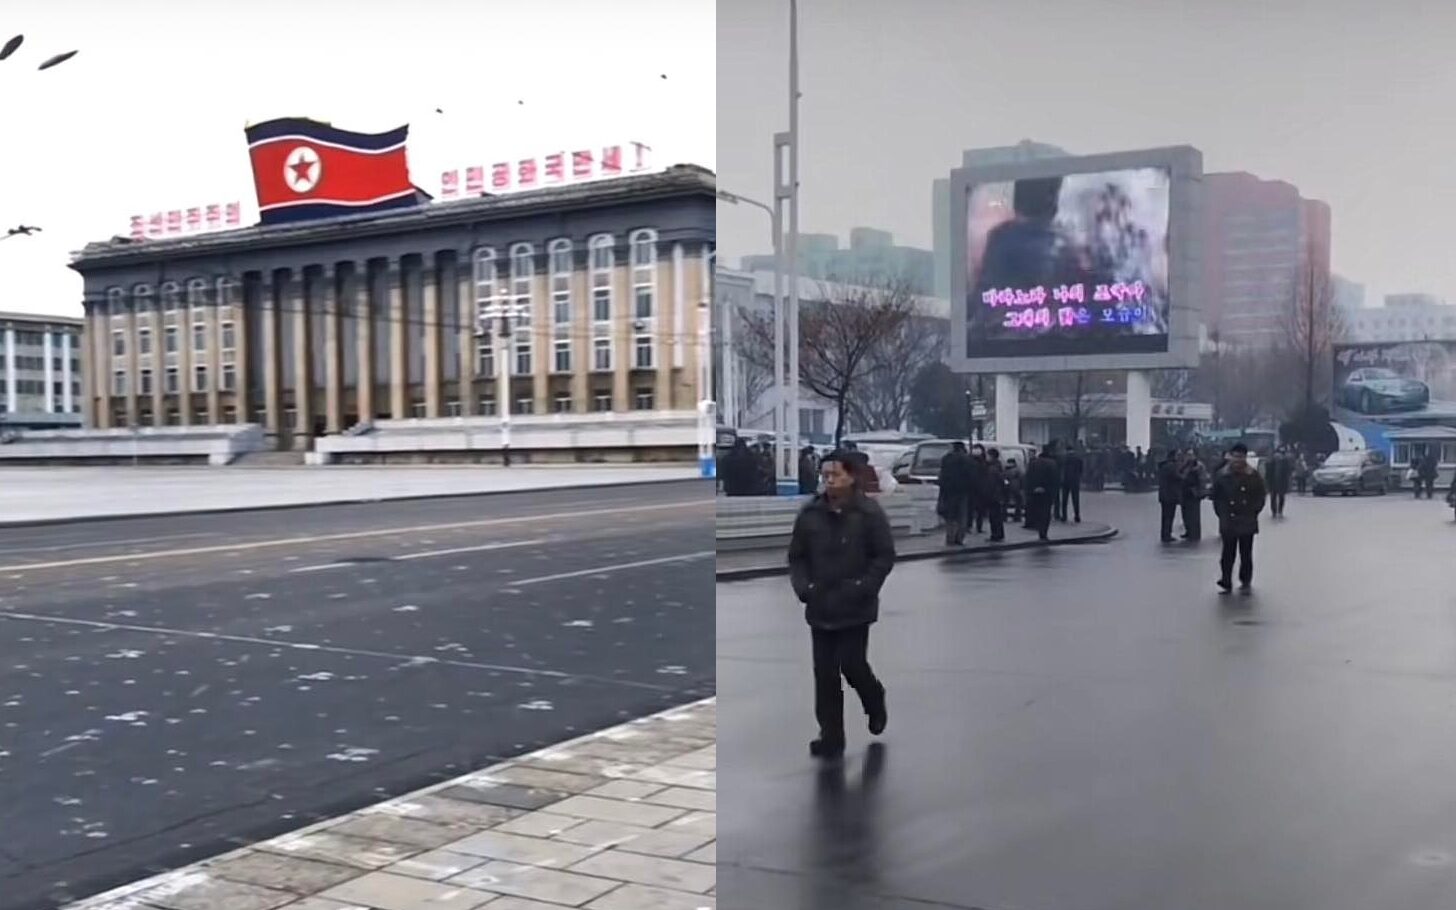 TikTok dotarł do Korei Północnej. "Tego nie pokażą Ci zachodnie media" /fot TikTok (northkoreanlife)